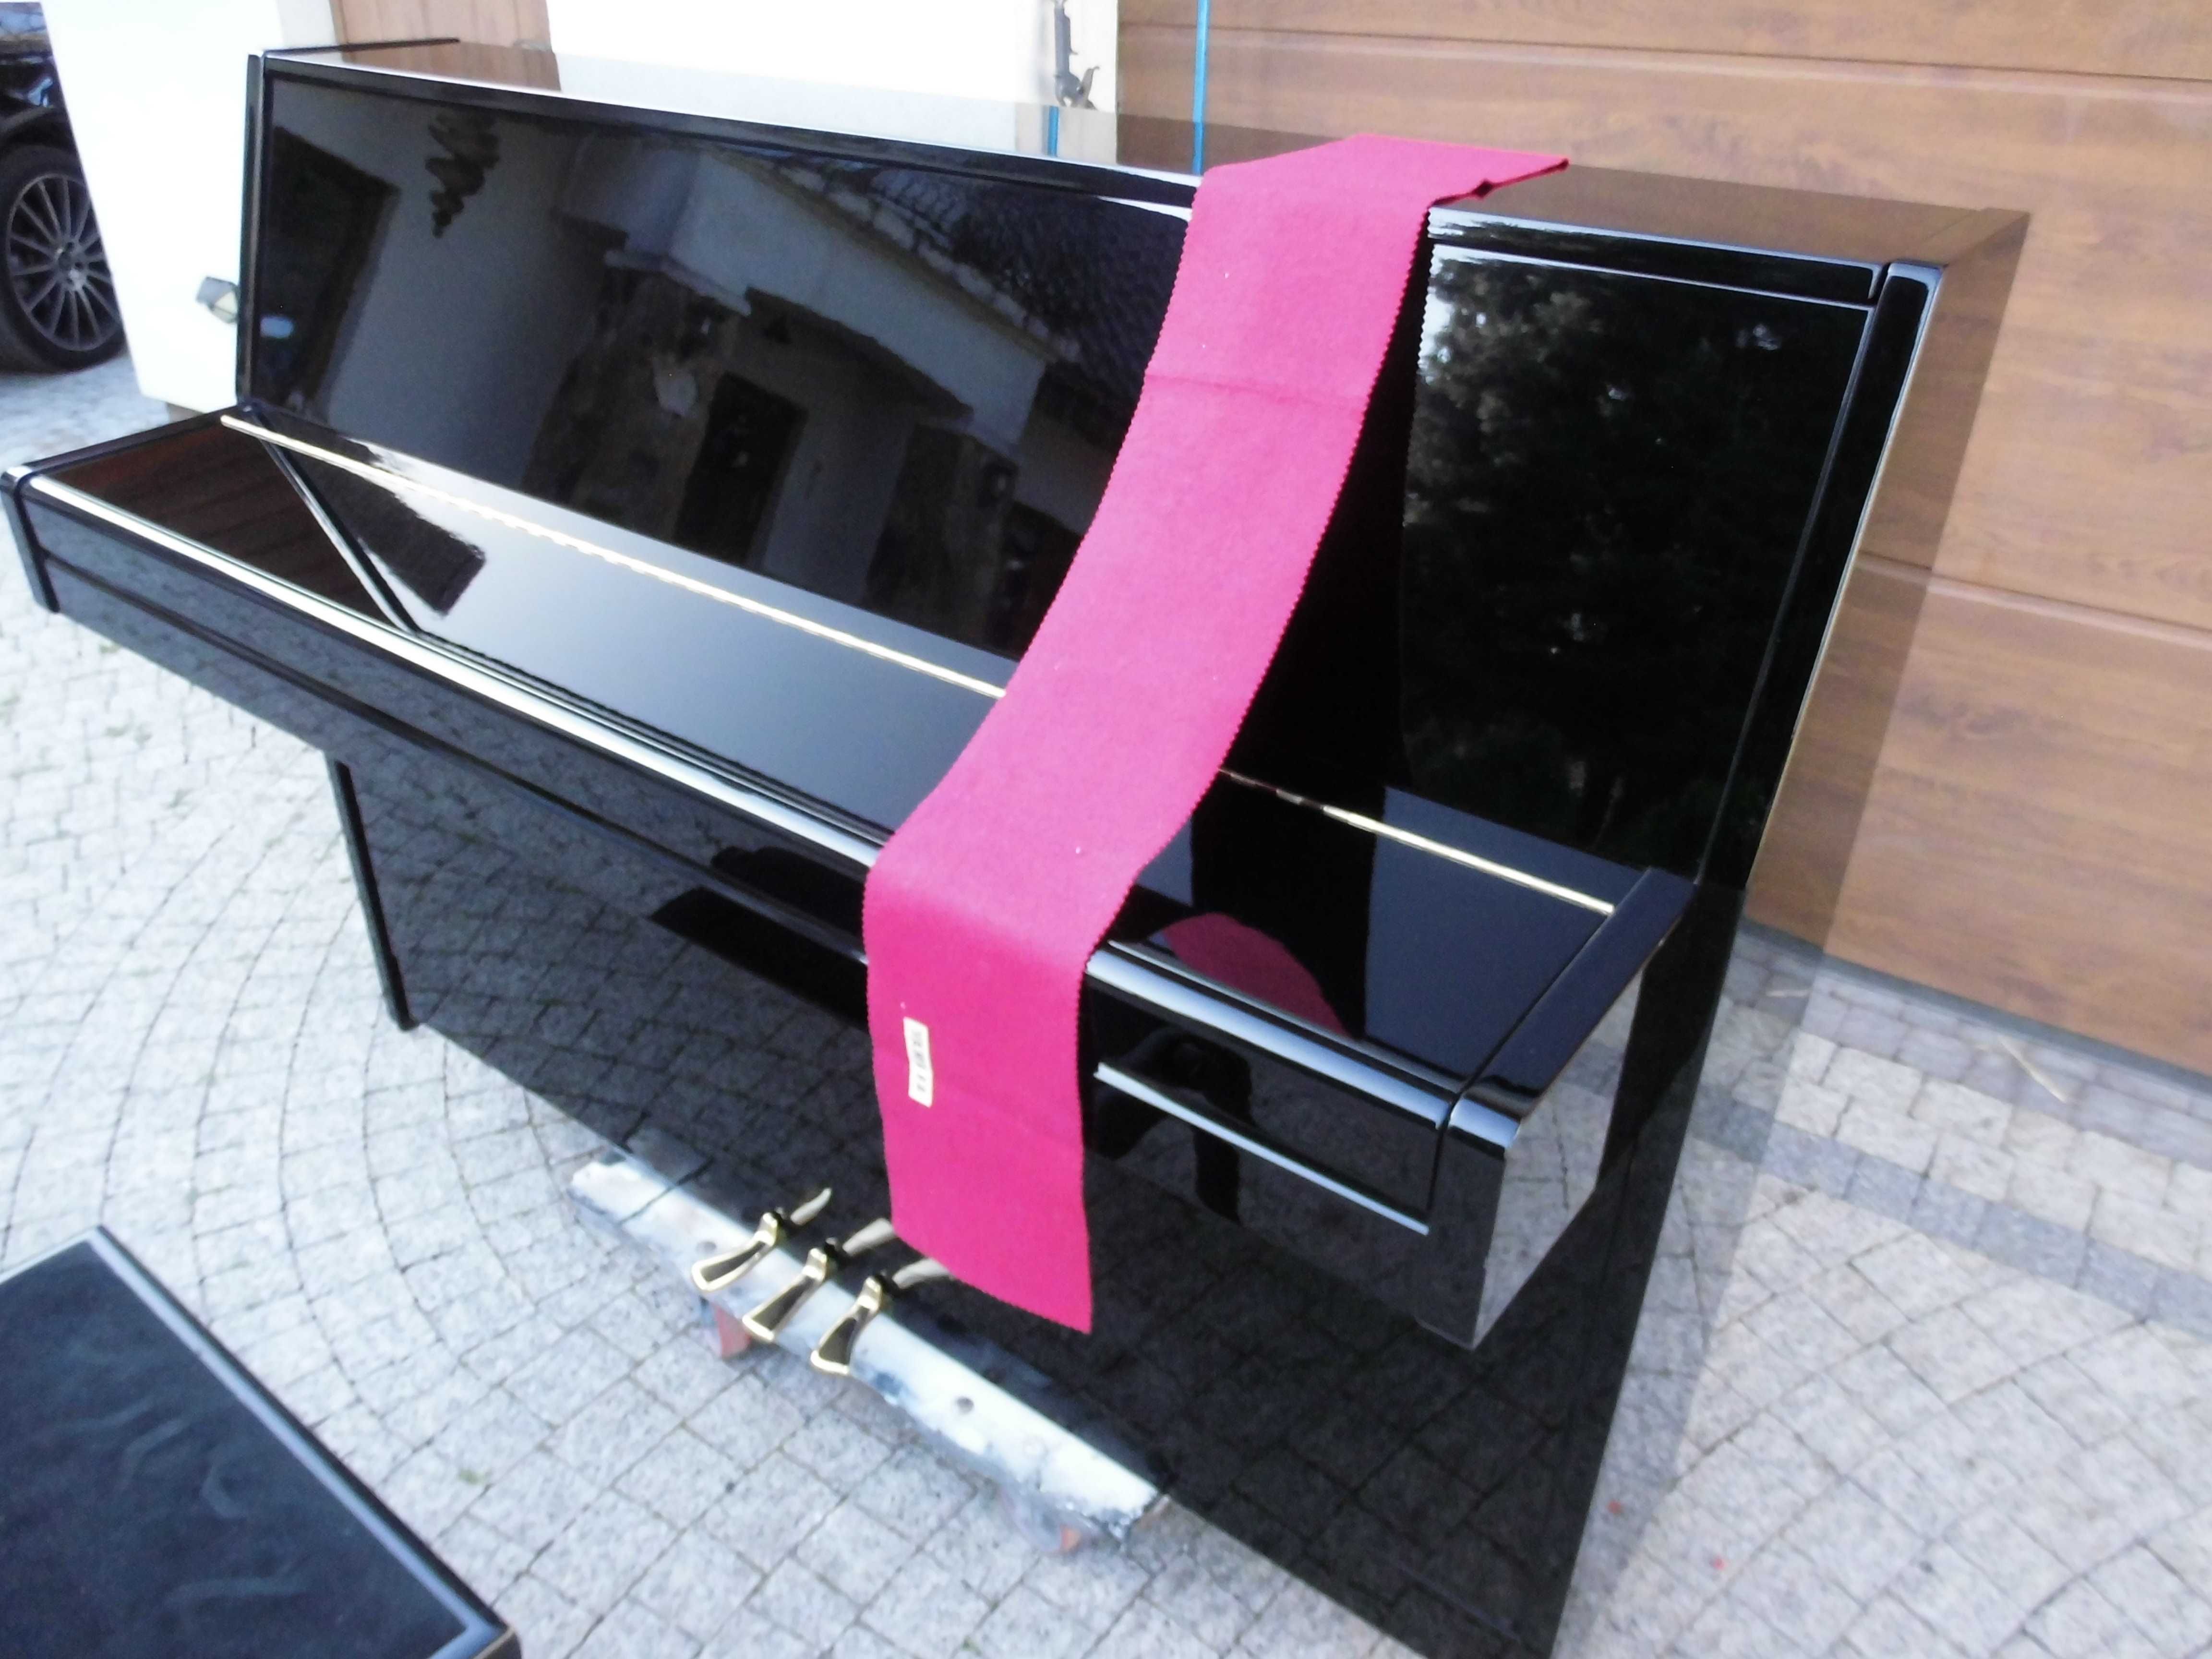 Pianino Yamaha M1J w oryginalnym czarnym połysku nówka sztuka